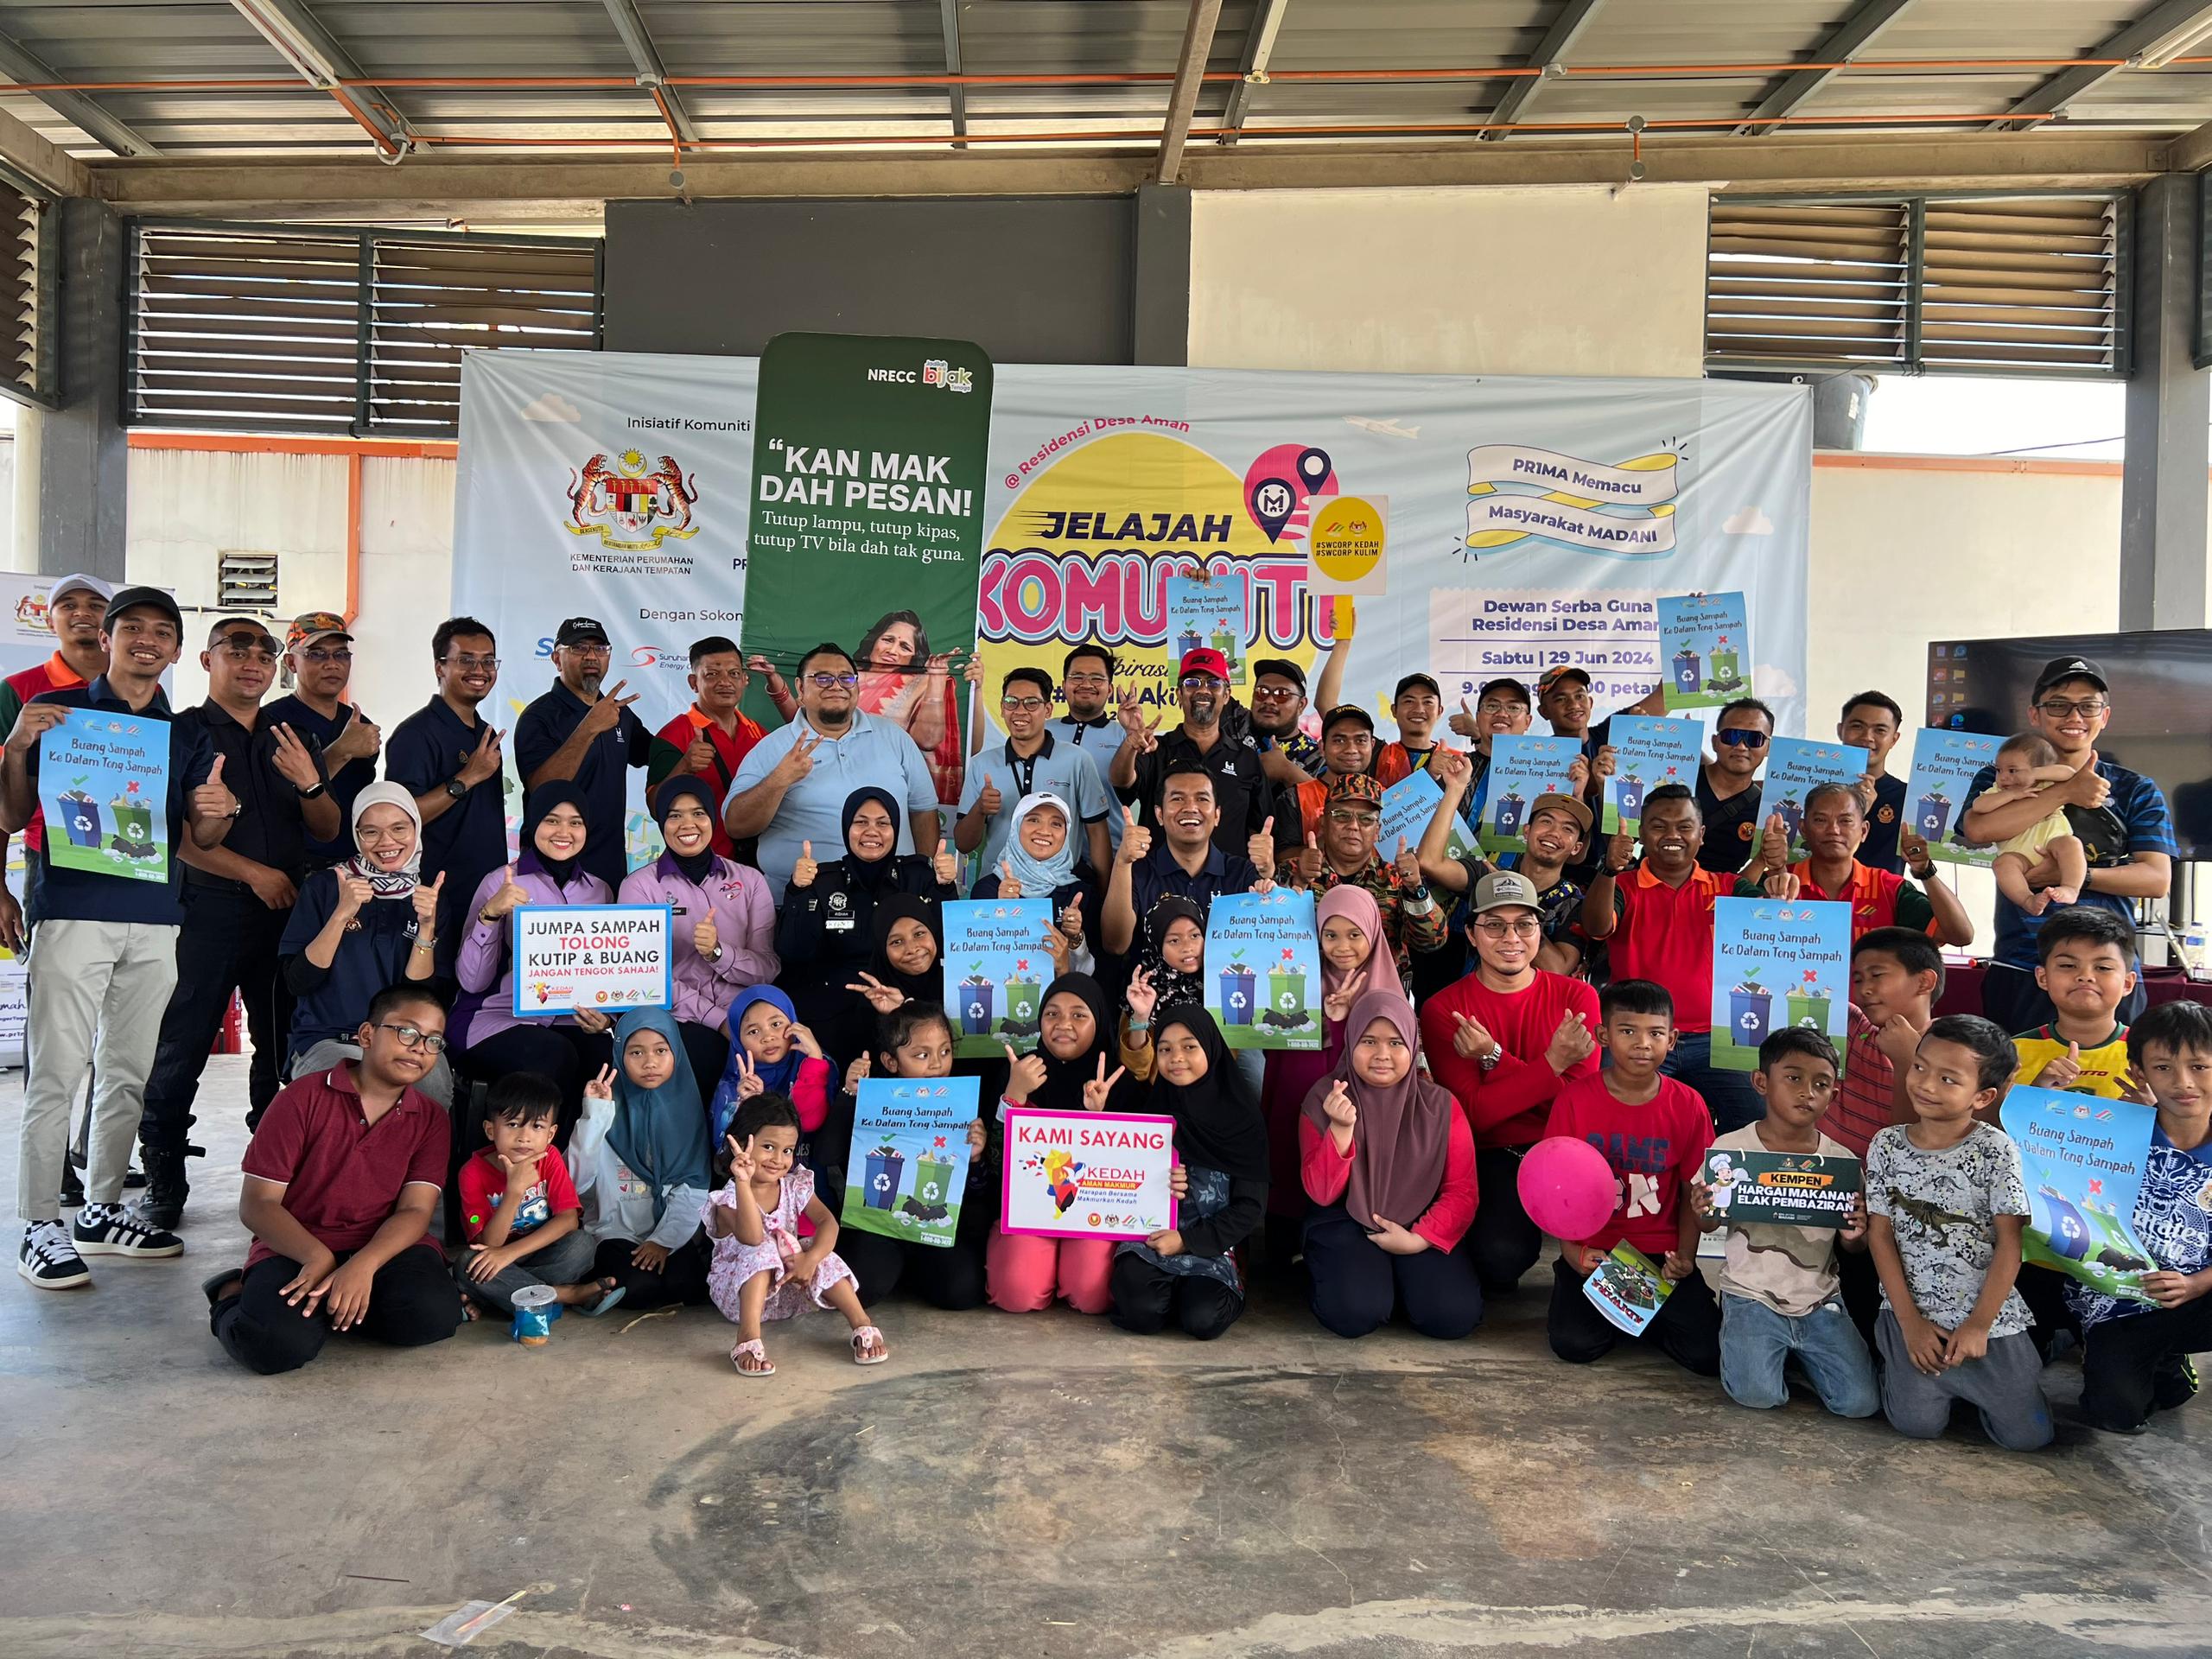 Cover image of Community Past Program: Jelajah Komuniti Aspirasi #PR1MAKita – Residensi Desa Aman, Kedah.